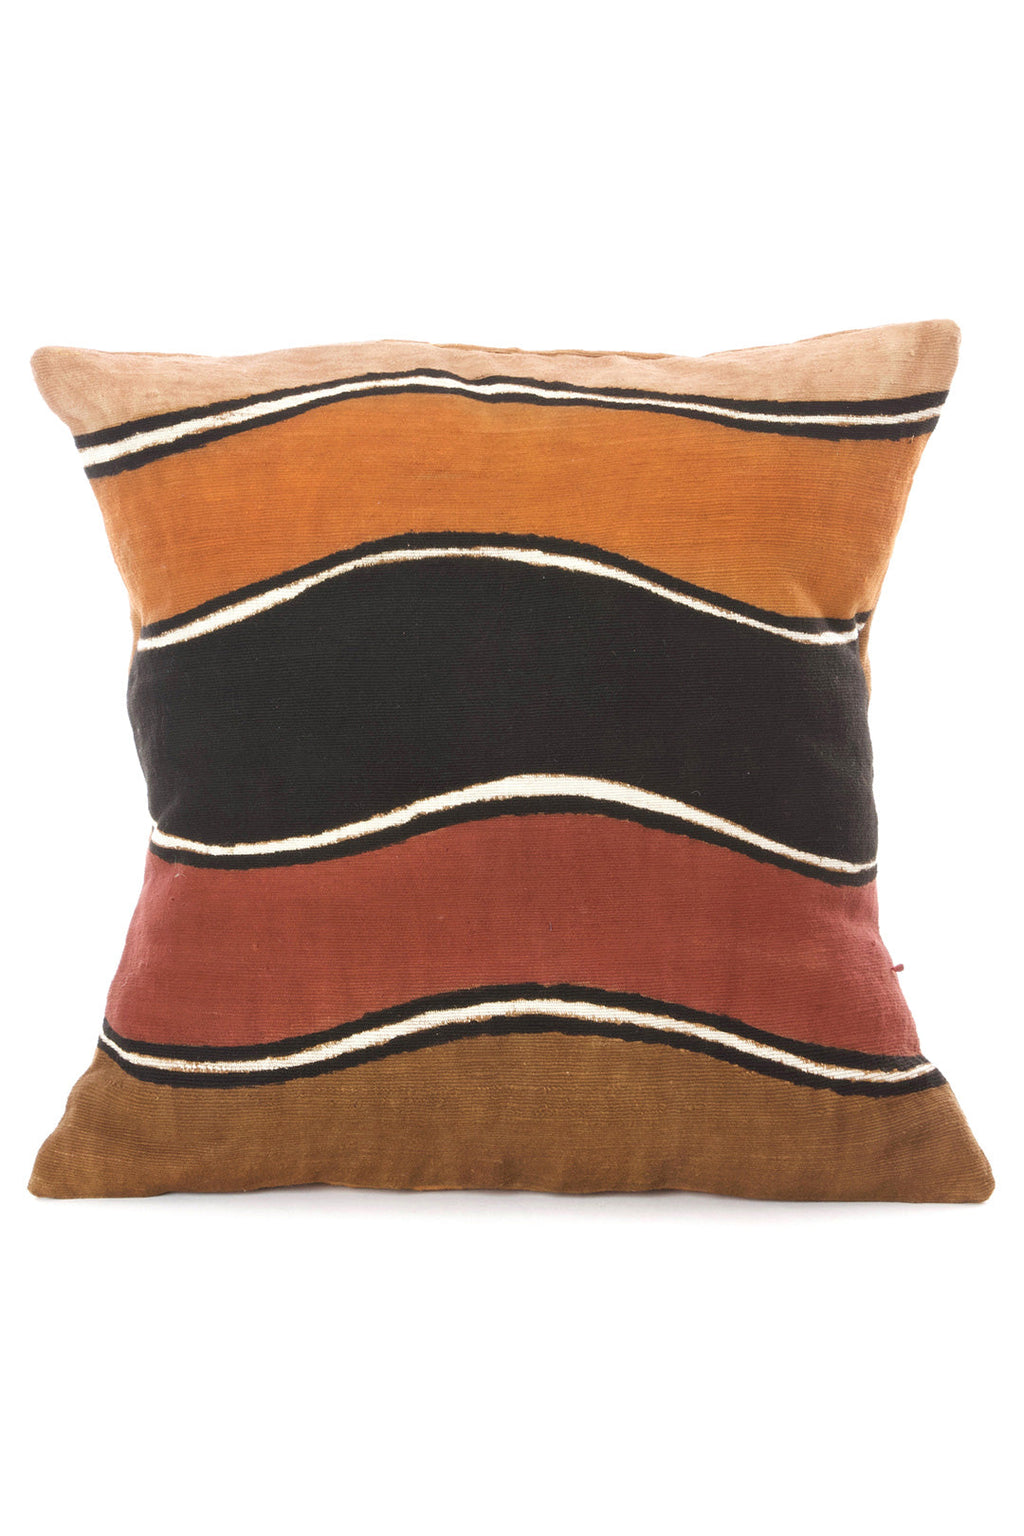 Mali Terrain Organic Cotton Pillow Cover, Image